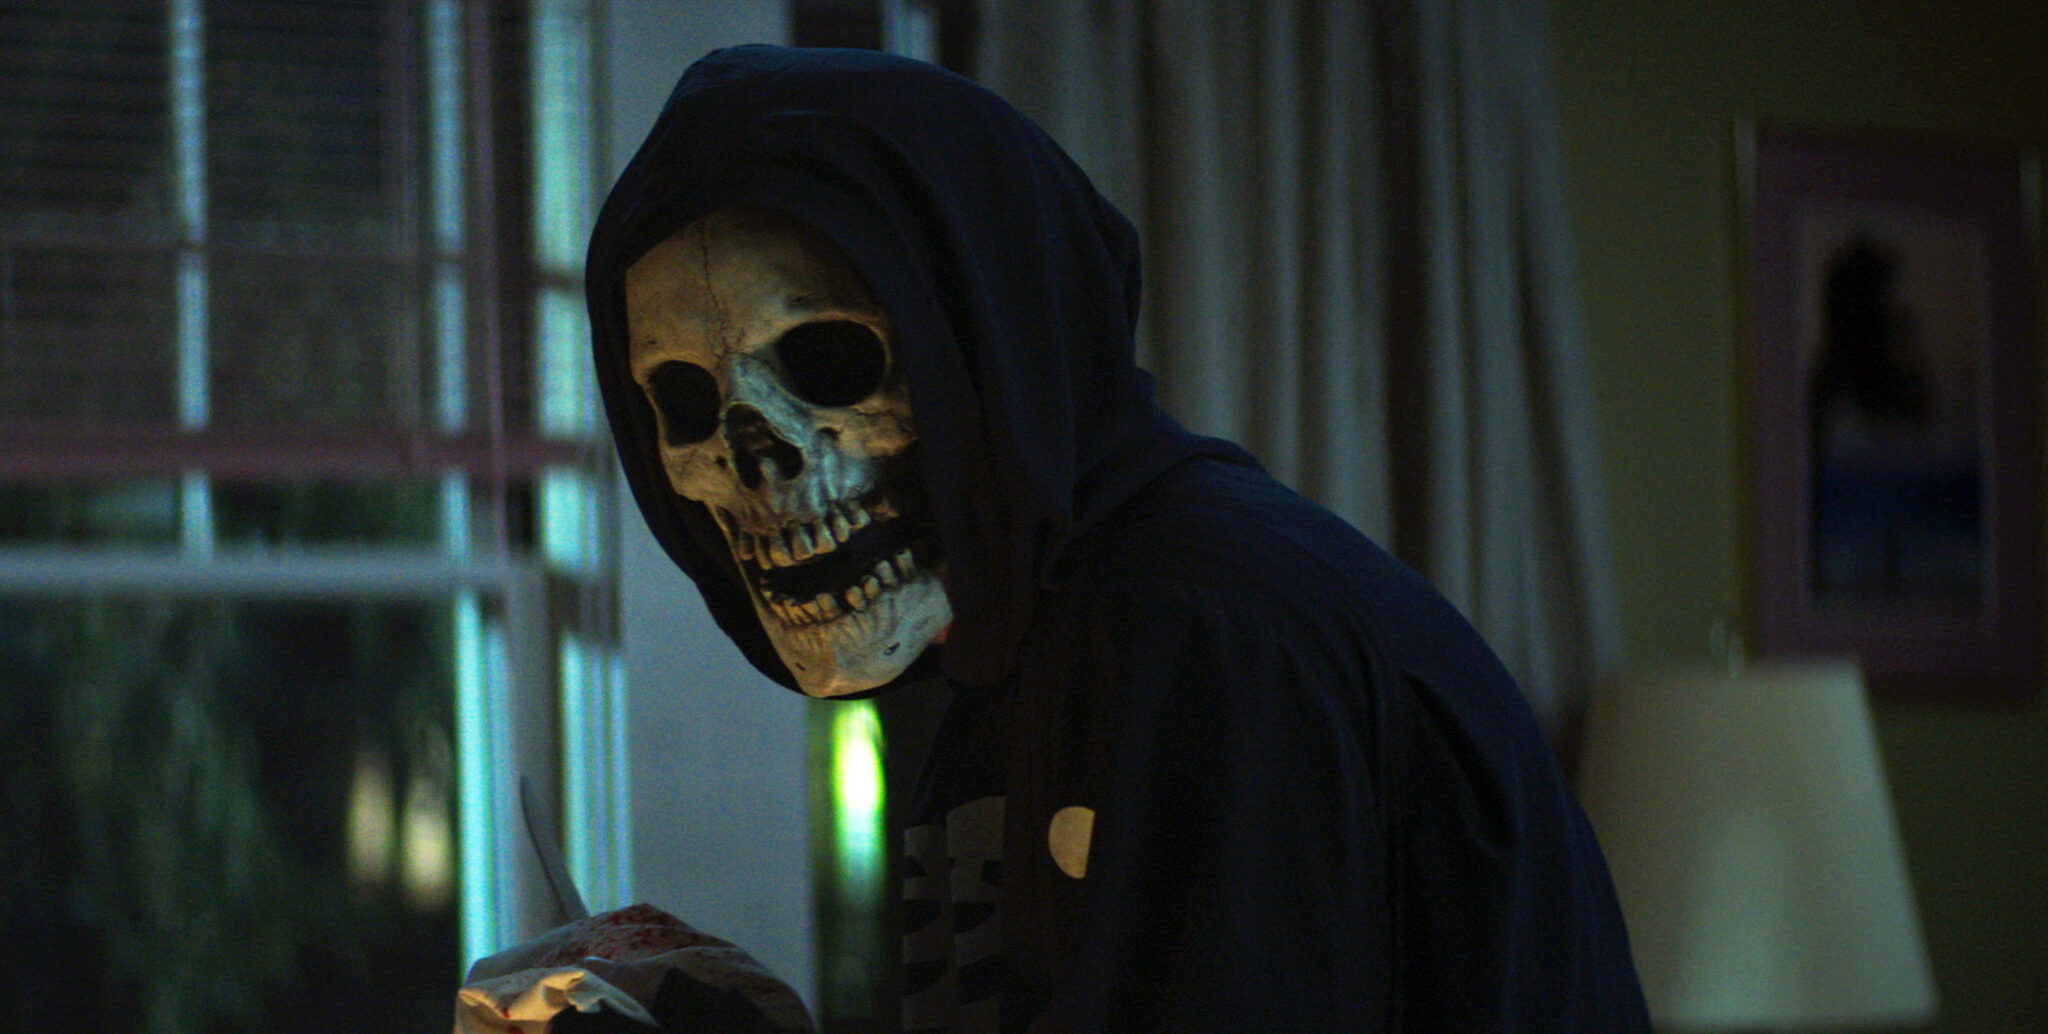 Eine Person mit Totenkopfmaske und Kapuzenpulli in schwarz in einem dunklen Zimmer. Die Person hält ein Messer in der Hand.